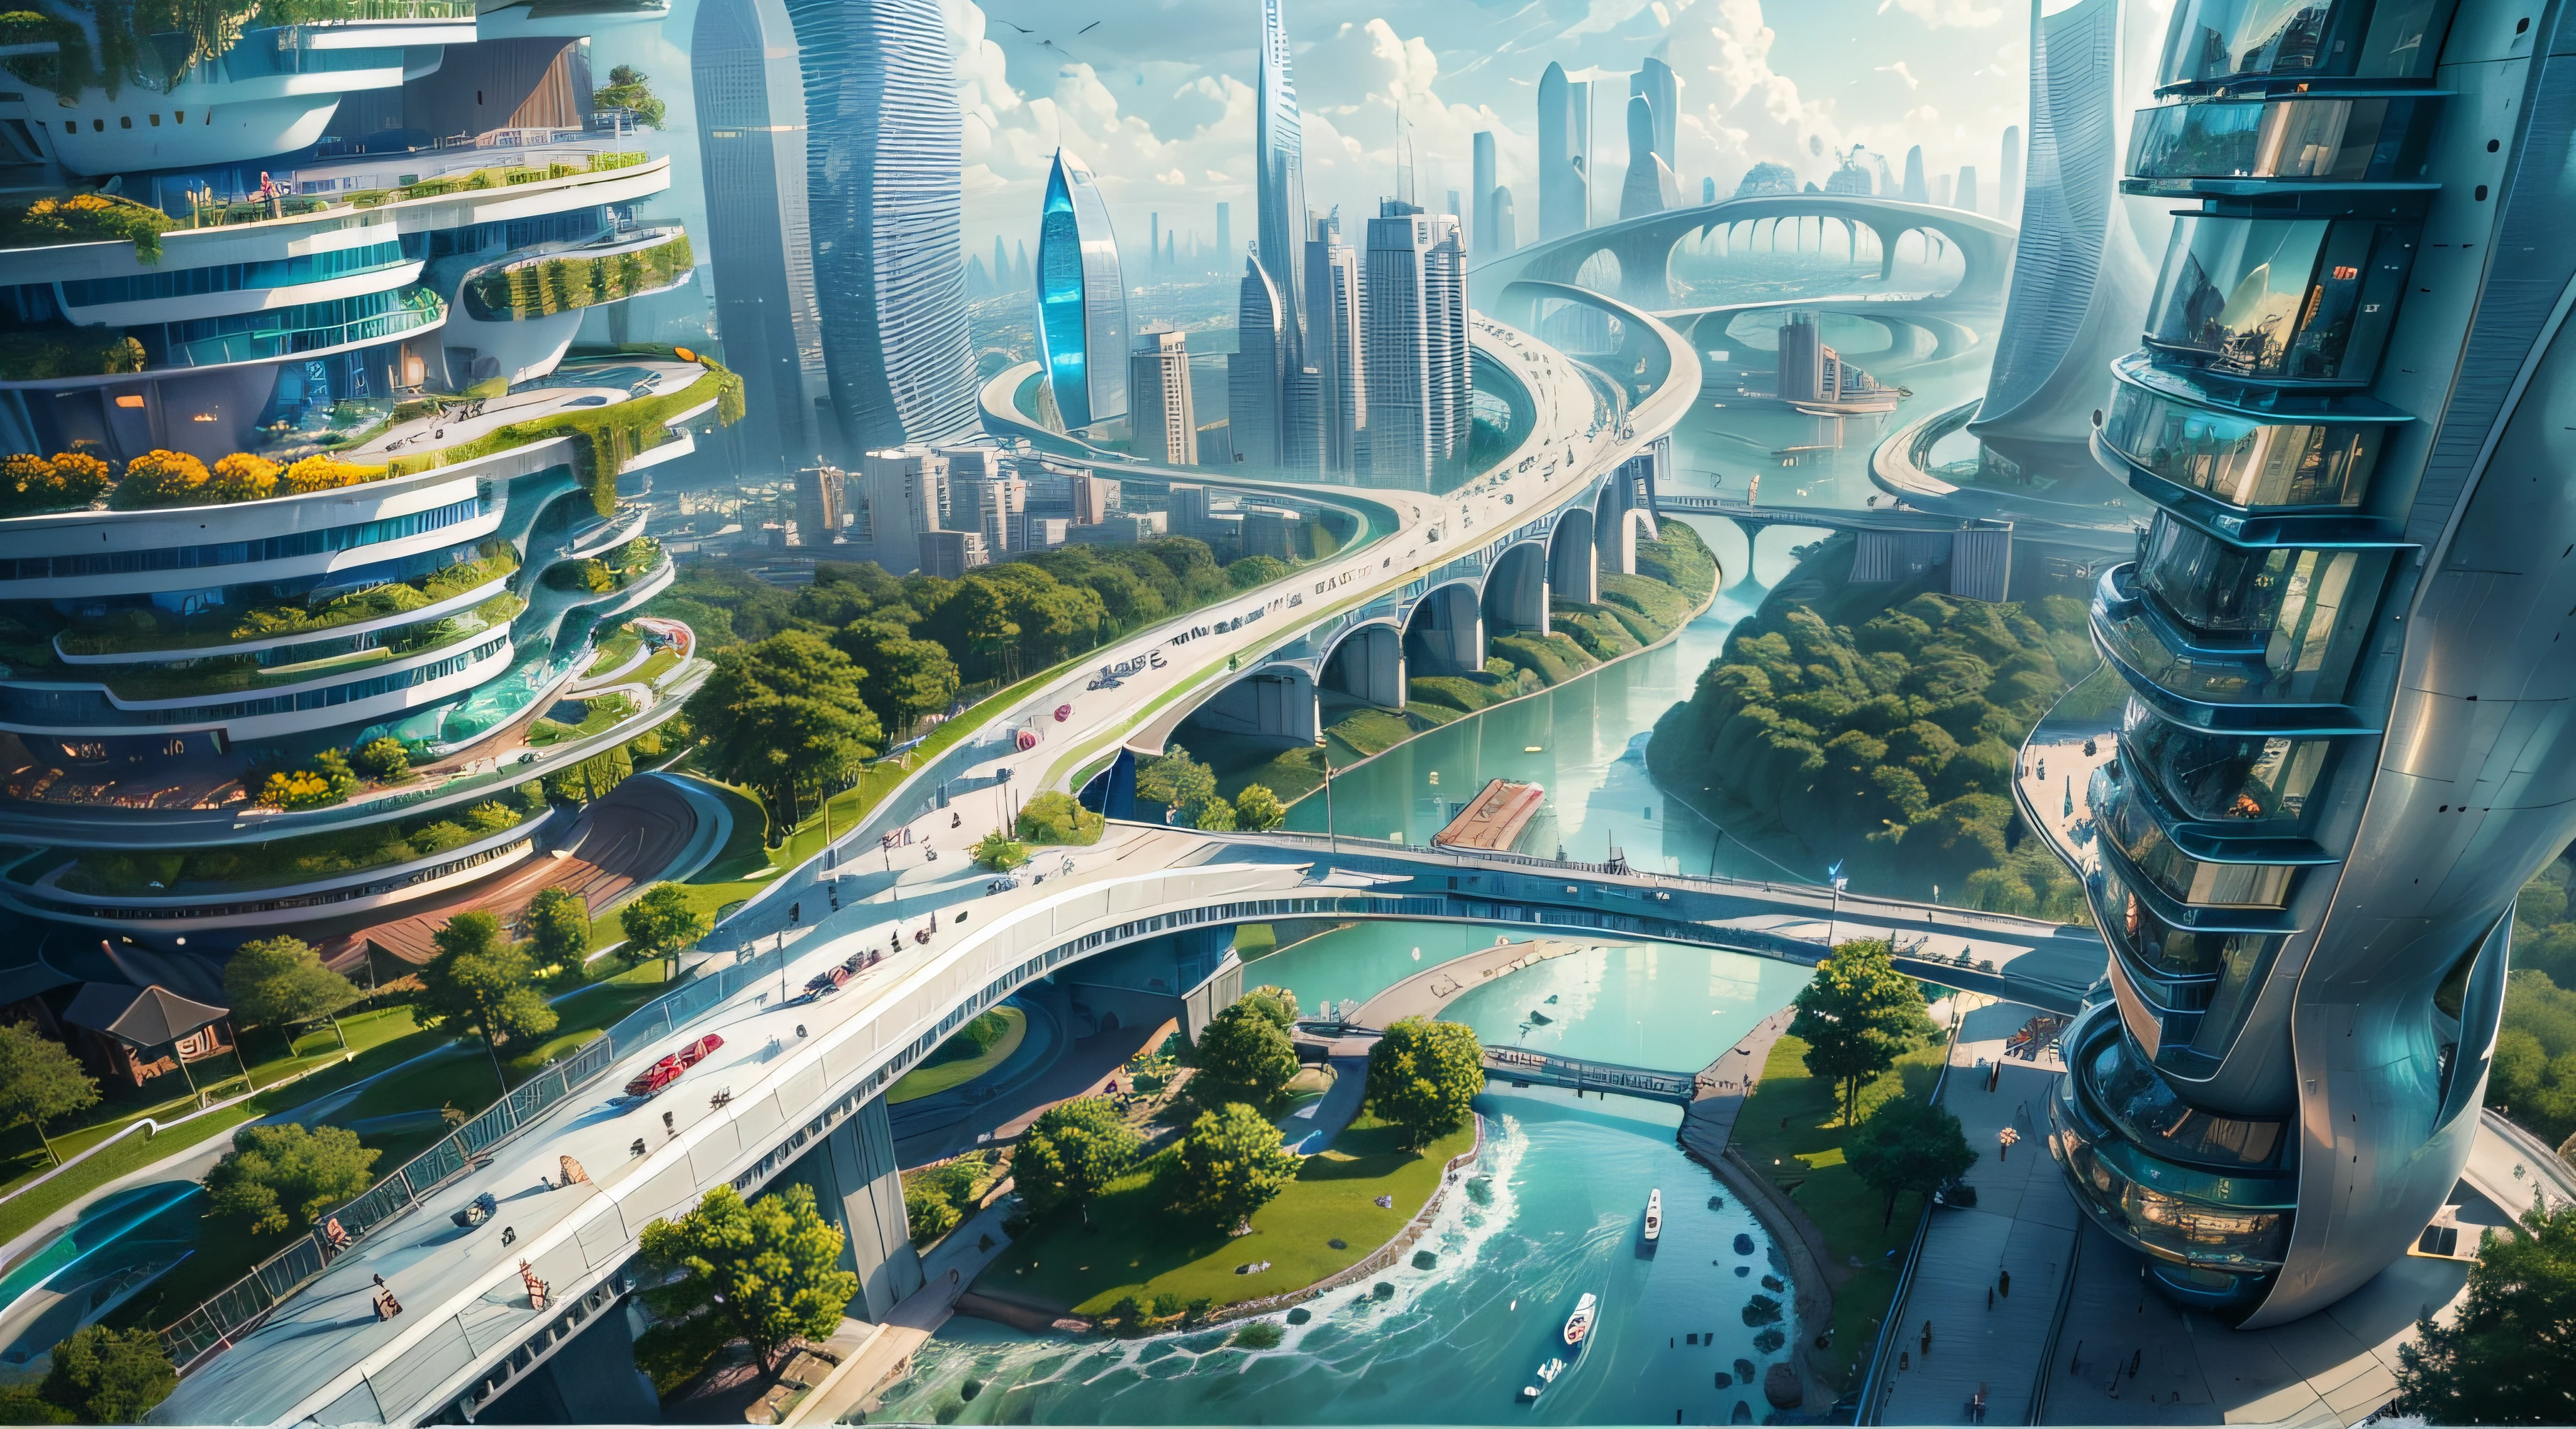 (最好的品質,4k,8K,高解析度,傑作:1.2),超詳細,(實際的,逼真的,照片般逼真:1.37),未來漂浮城市,未来科技,龐大的城市高科技平板平台,飛艇,漂浮在空中,未來城市,周圍有小飛艇,高科技半球形平台,彩灯,先進的架構,現代建築,摩天大樓,存取雲,風景優美,俯瞰城市,令人印象深刻的設計,與自然無縫融合,充滿活力和活力的氛圍,未來交通系統,停車已暫停,透明路徑,郁郁葱葱的绿色植物,空中花園,瀑布,壯麗的天際線,水面上的倒影,波光粼粼的河流,建築創新,未來派的摩天大樓,透明圓頂,建築物的形狀很不尋常,高架走道,令人印象深刻的天際線,发光的灯光,未来科技,簡約設計,風景名勝區,全景,穿雲塔,鮮豔的色彩,史詩般的日出,史詩般的日落,炫目的燈光顯示,神奇的氛围,未來城市,城市烏托邦,奢華生活方式,創新能源,永續發展,智慧城市技術,先進的基礎設施,宁静的气氛,自然與科技和諧相處,令人驚嘆的城市景觀,前所未有的都市規劃,建築與自然無縫銜接,高科技大都市,尖端的工程奇蹟,城市生活的未來,富有遠見的建築概念,節能建築,與環境和諧,一座漂浮在雲端的城市,烏托邦夢想成現實,可能性是無止境,最先進的交通網絡,綠色能源融合,創新材料,令人印象深刻的全息顯示,先進的通訊系統,令人驚嘆的鳥瞰圖,安靜祥和的環境,現代主義美學,空灵之美